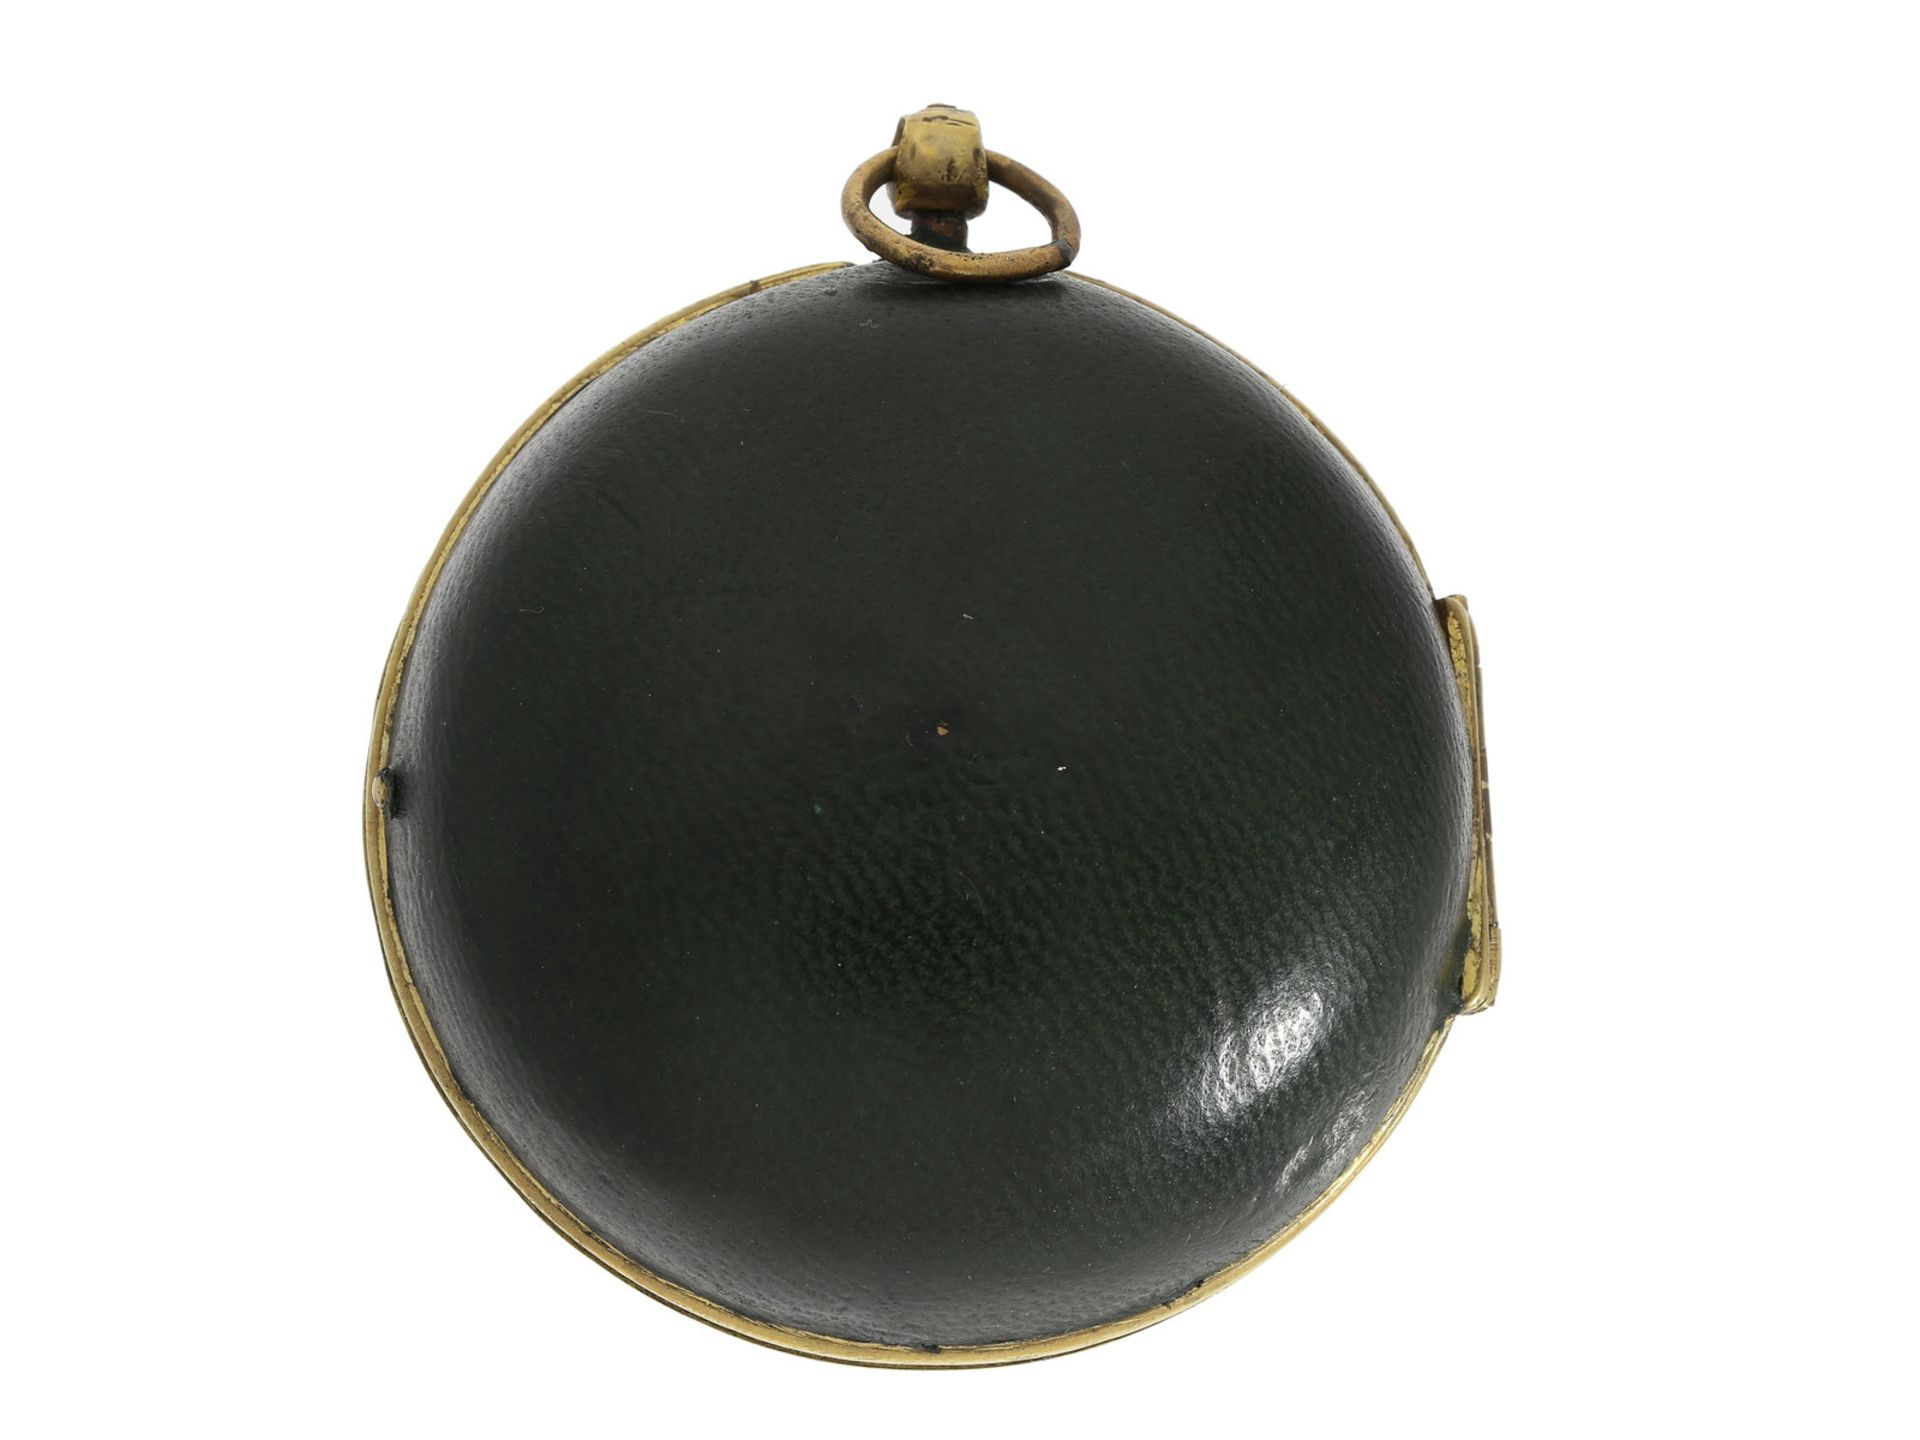 Taschenuhr: ganz frühe französische Oignon Taschenuhr, um 1700, signiert Dutens a ParisCa. 57mm, ca. - Bild 2 aus 6